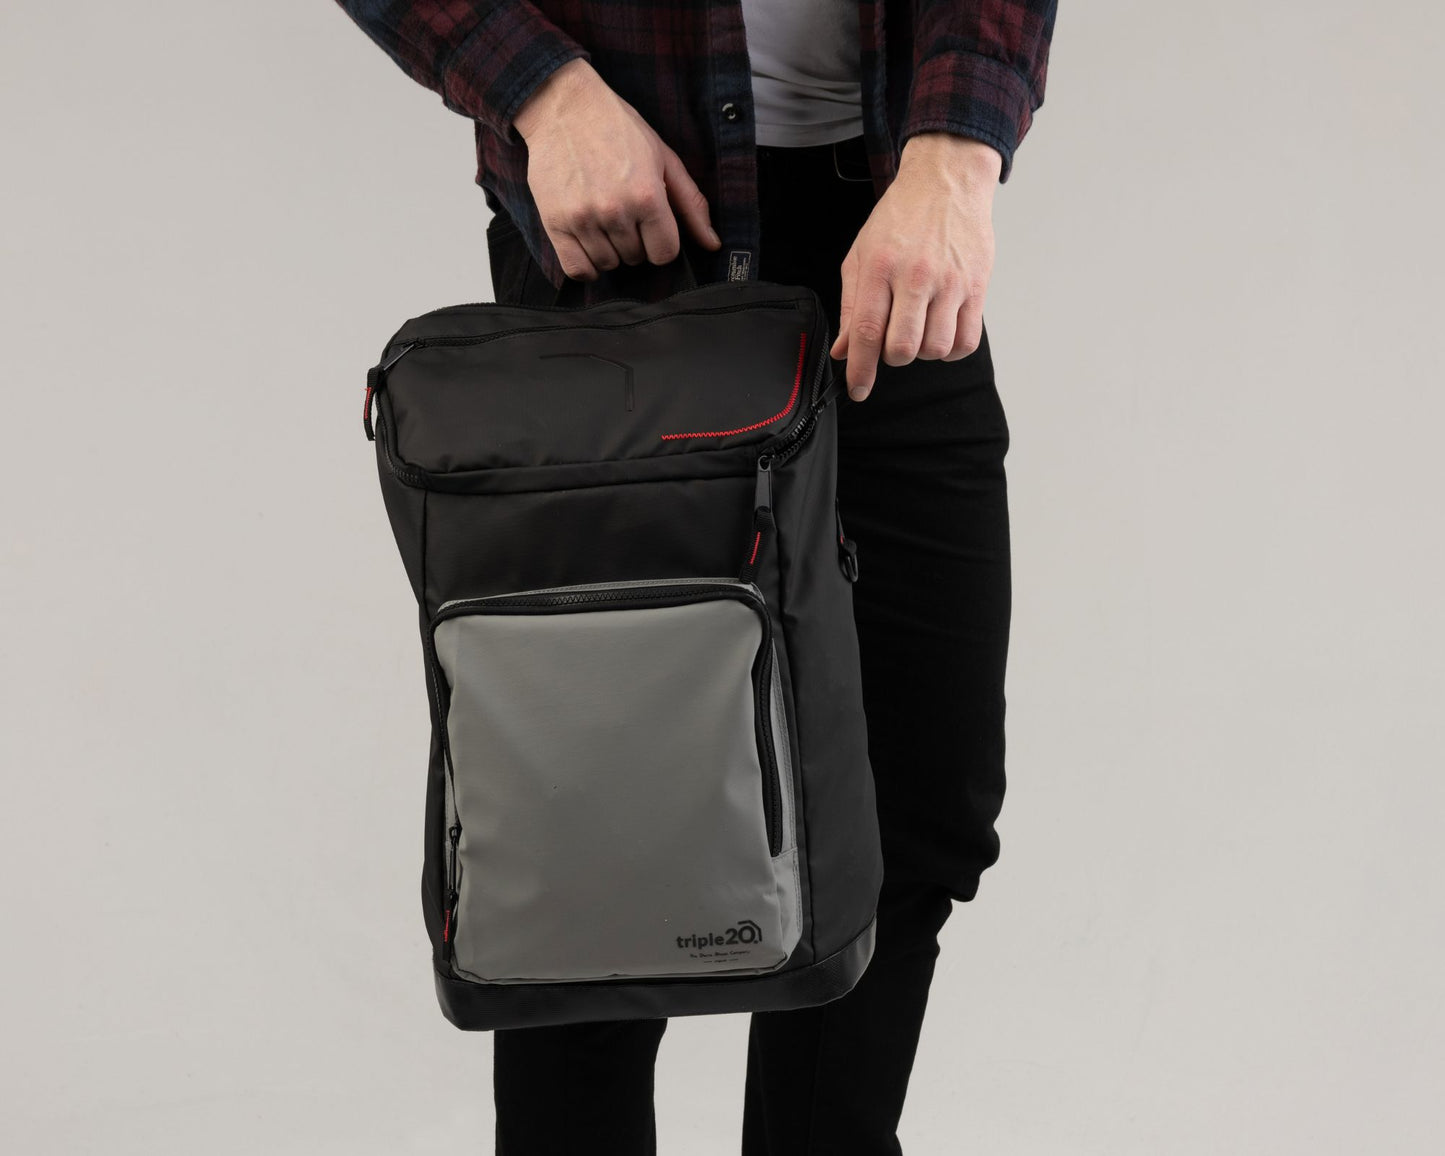 Ein männliches Model hält den neuen triple20 Dartrucksack in den Händen. Gut zu sehen ist der Rucksack in seiner Gesamtheit sowie die lässige Farbkombi aus schwarz, grau und rot. Der Rucksack hat eine standardisierte Größe und fasst neben einem Paar Schuhe auch diverse weitere Utensilien.